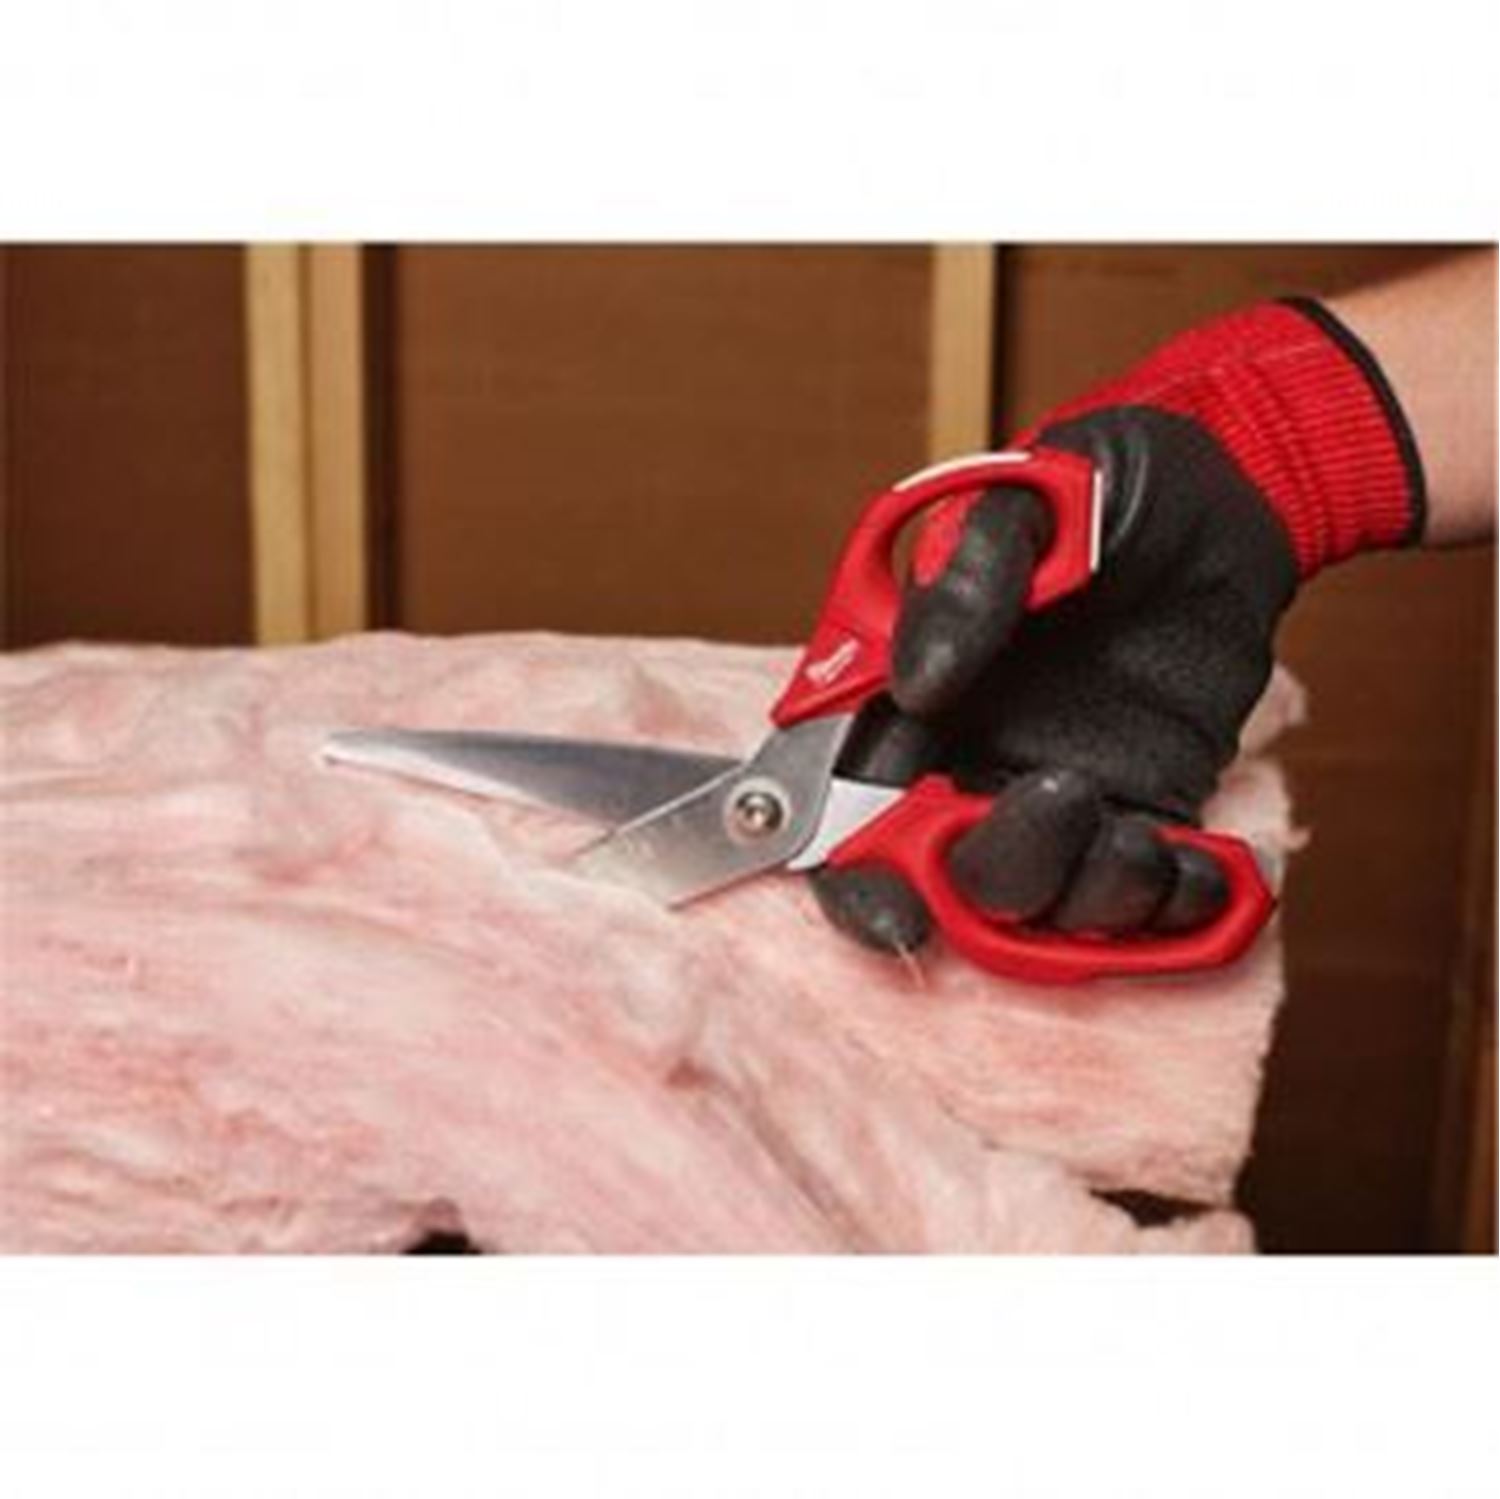 Снимка на Права работна ножица - Milwaukee Jobsite Straight Scissors, 4932479409